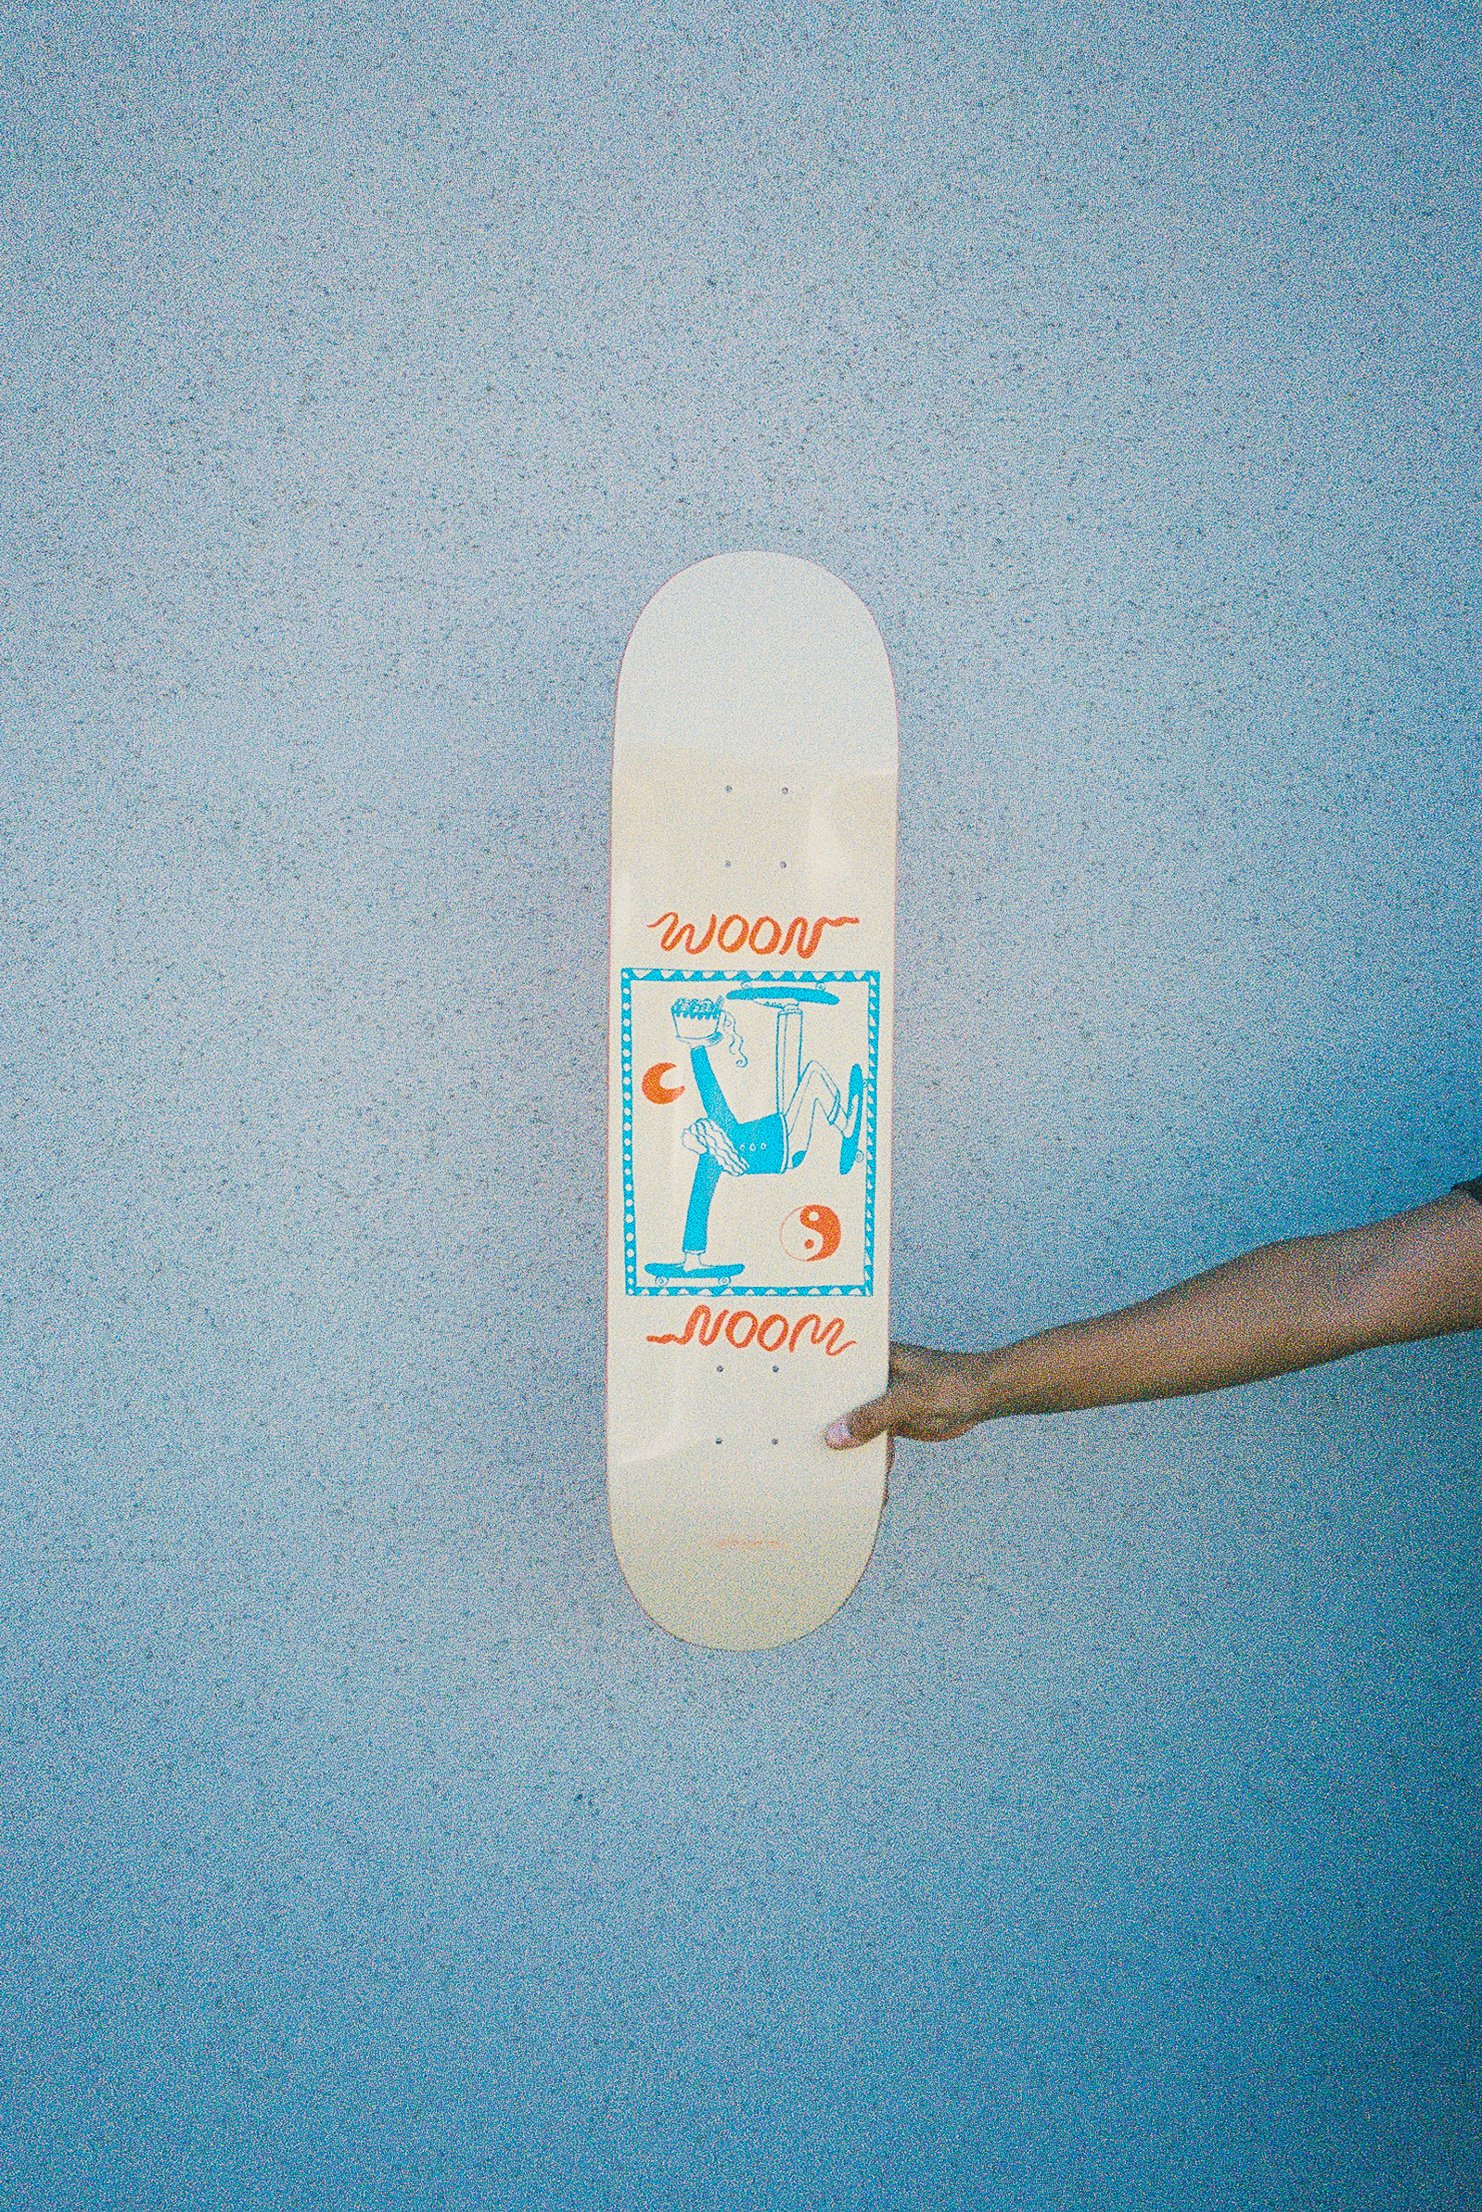 A hand holding a skateboard deck